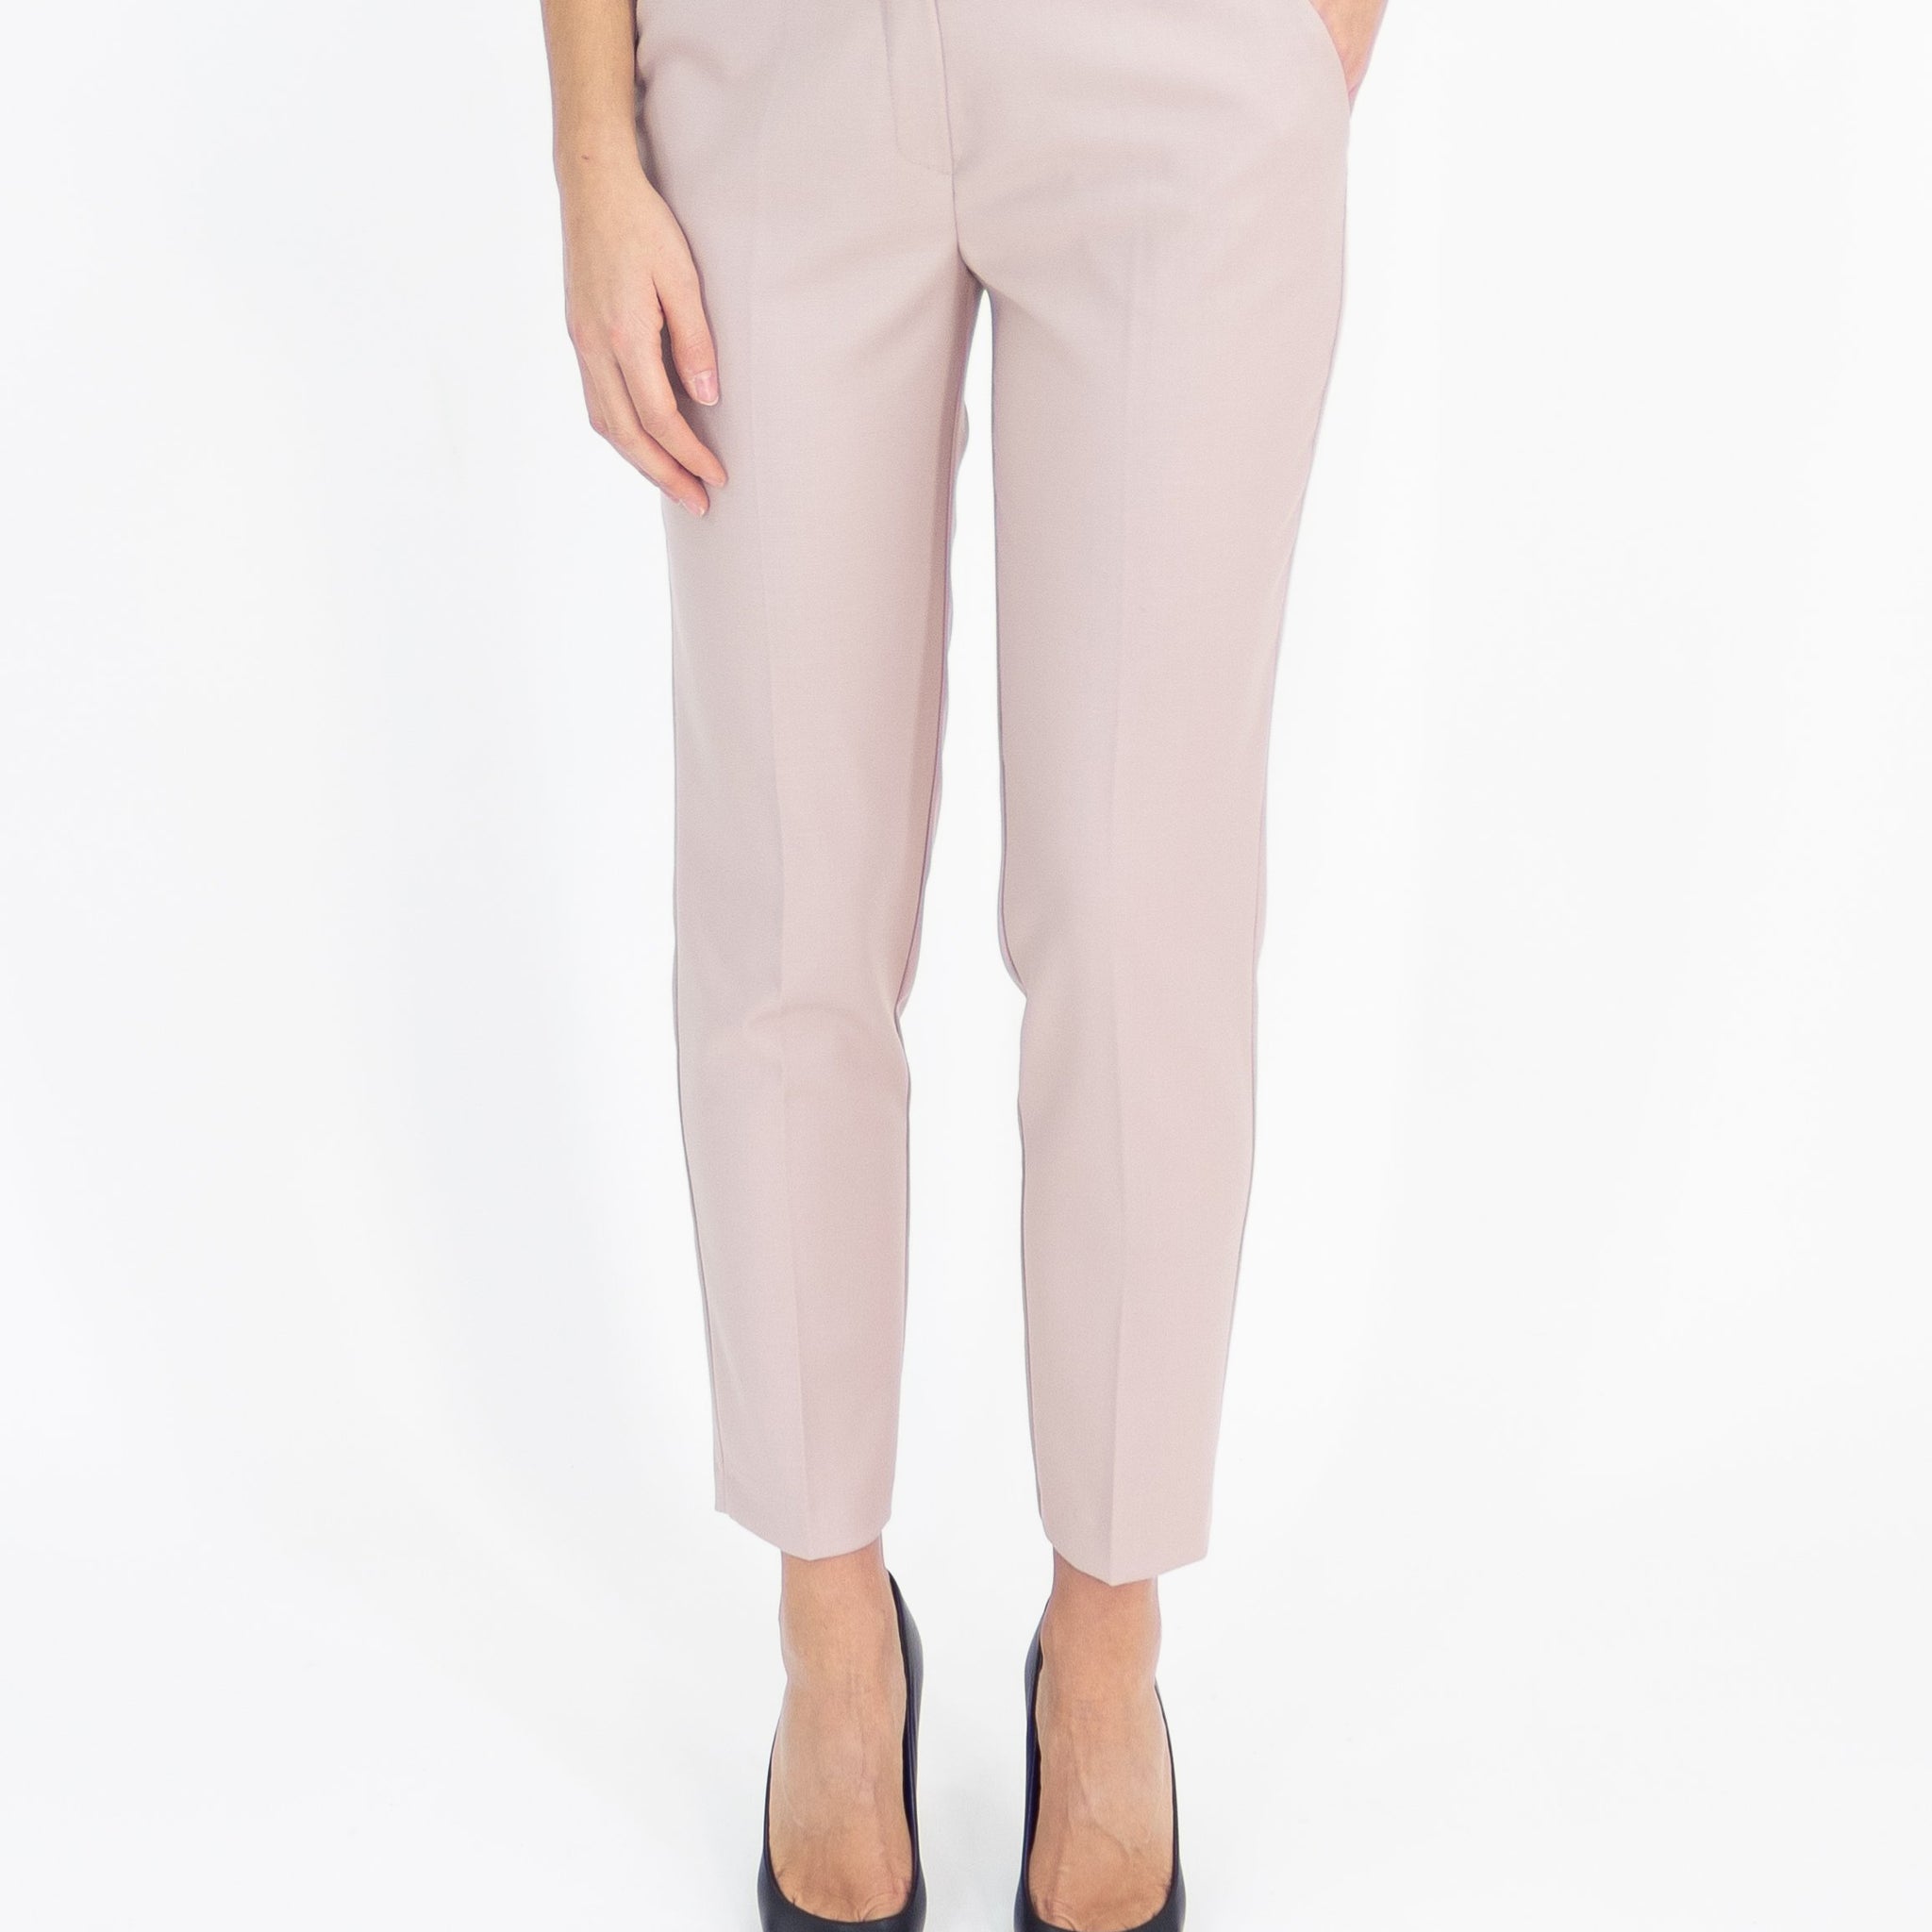 Pantalone rosa cipria classico